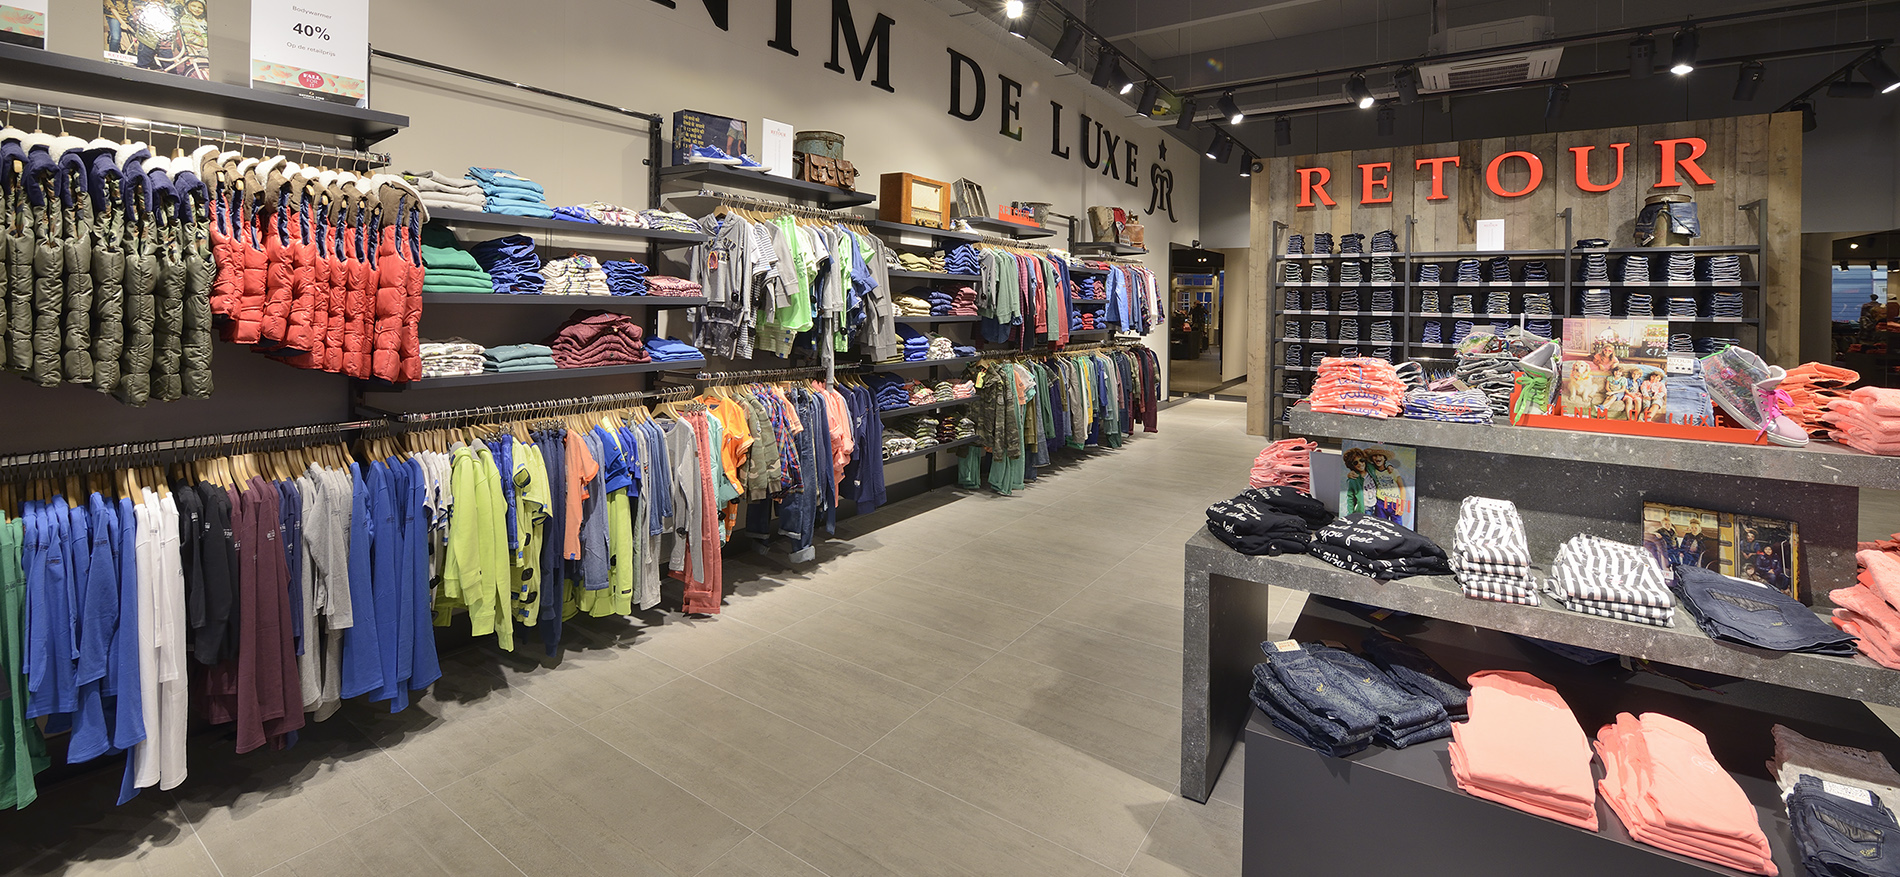 Terzijde Bekwaamheid Klokje Retour Jeans Denim de Luxe: Winkel inrichting kinderkleding winkel door WSB  >>